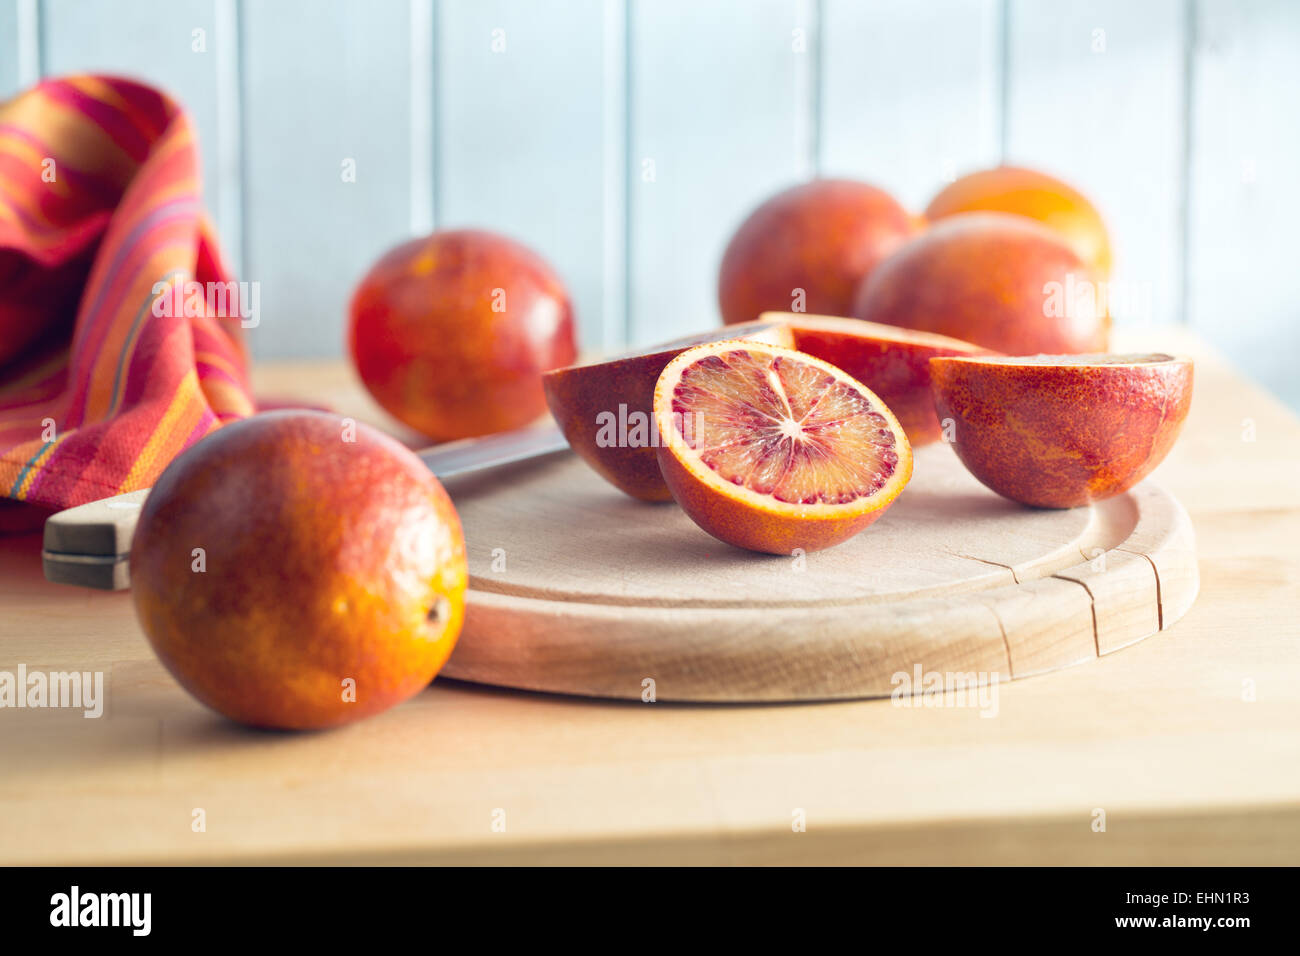 halved blood orange on kitchen table Stock Photo